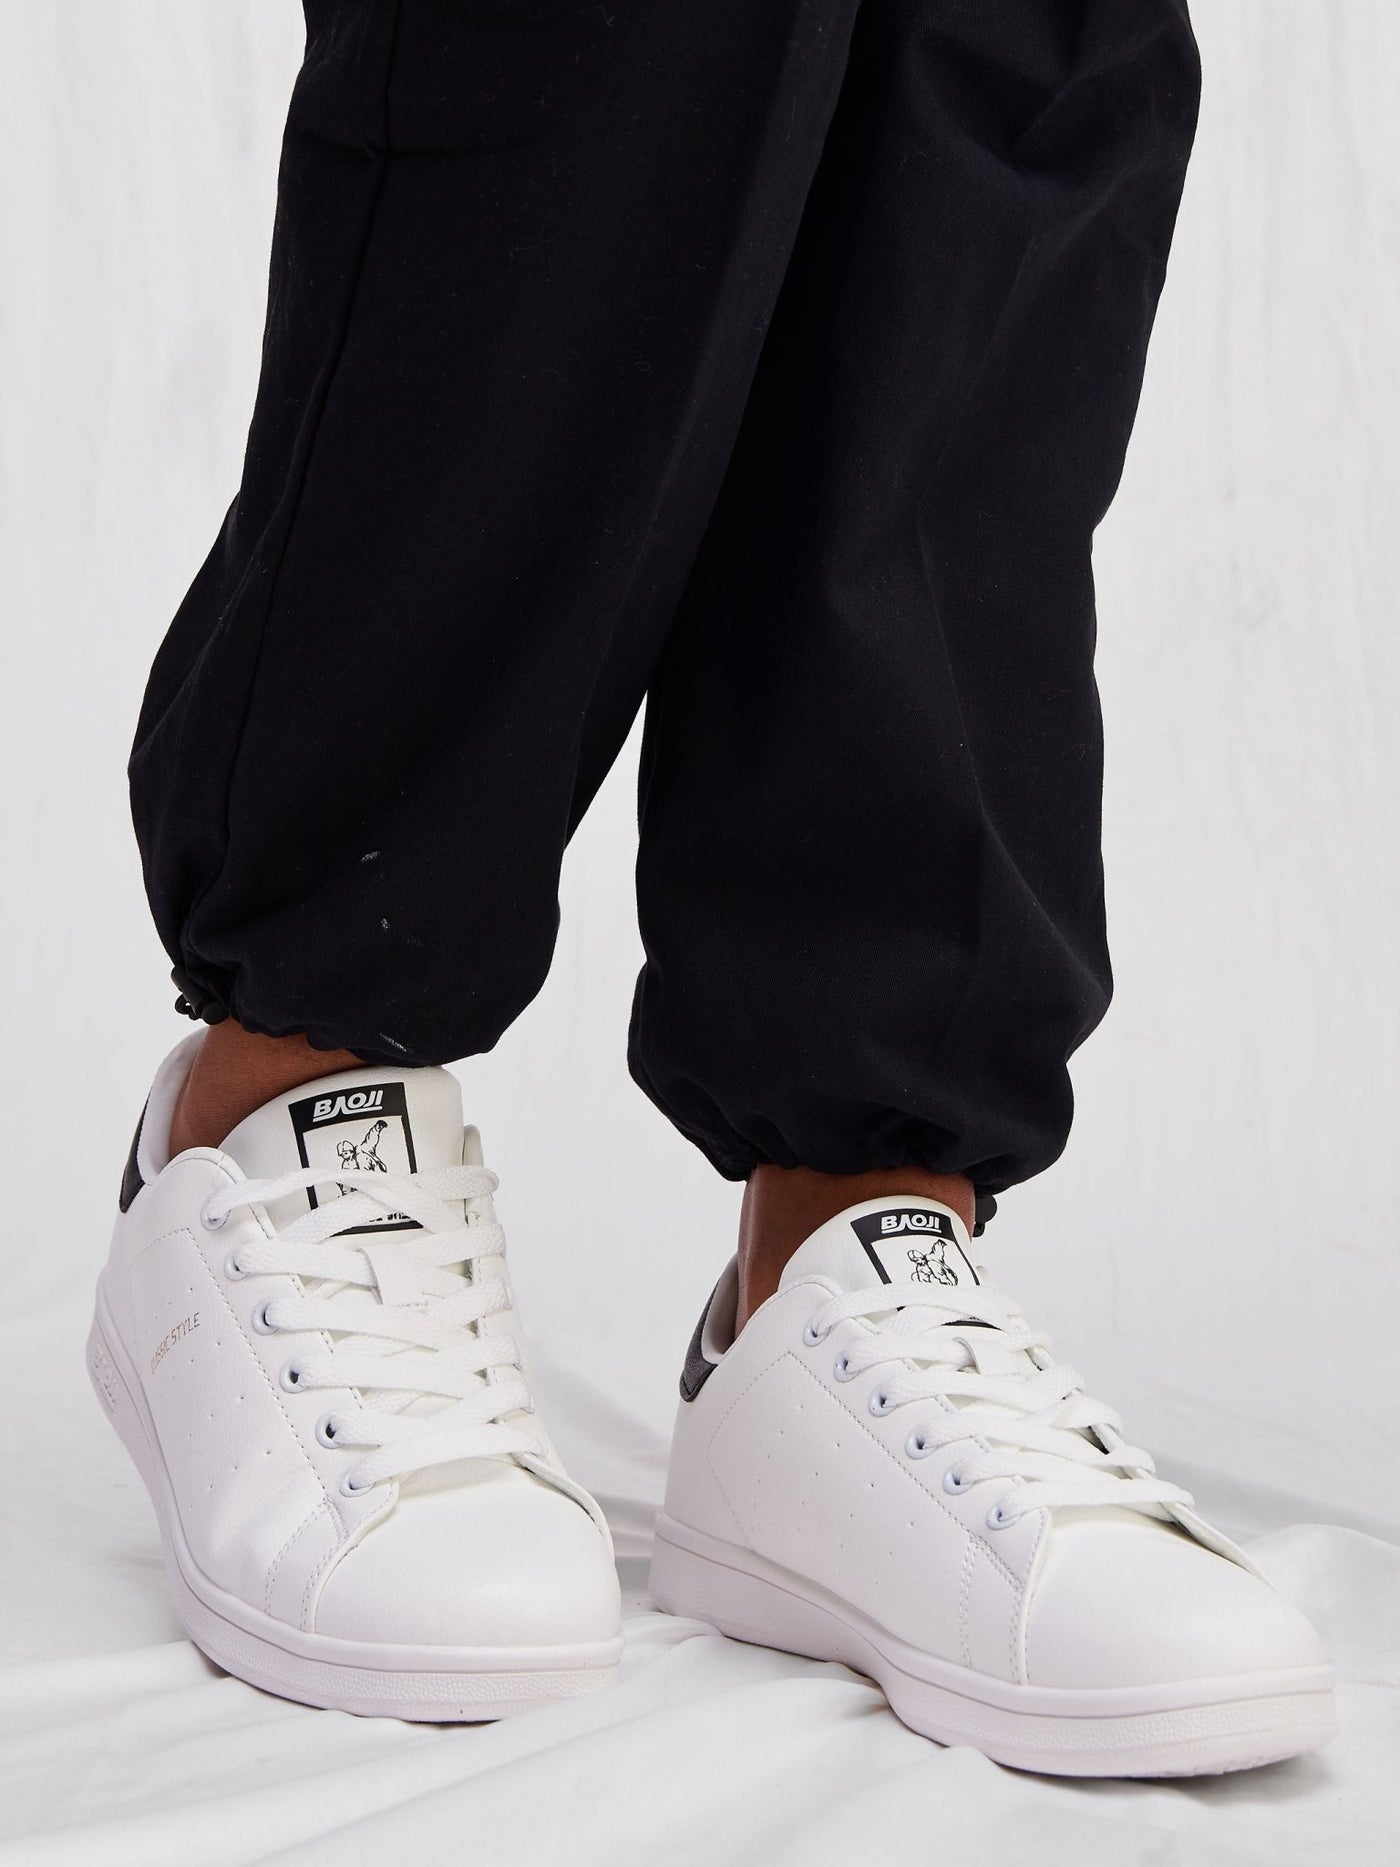 Ziatu Women's Colour Pop Sneakers - Black / White - Shopzetu